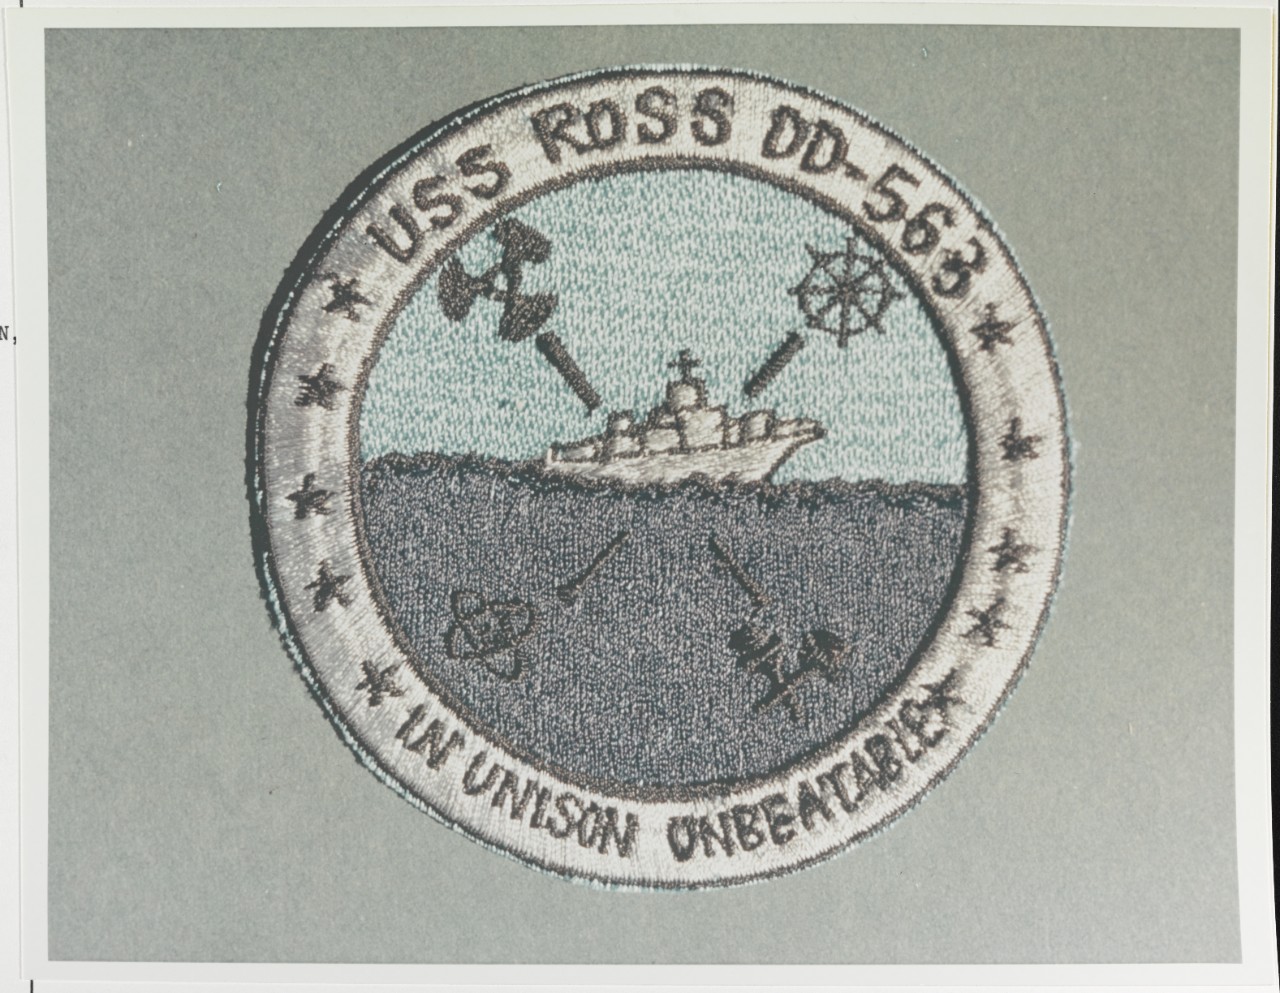 Insignia: USS ROSS (DD-563)